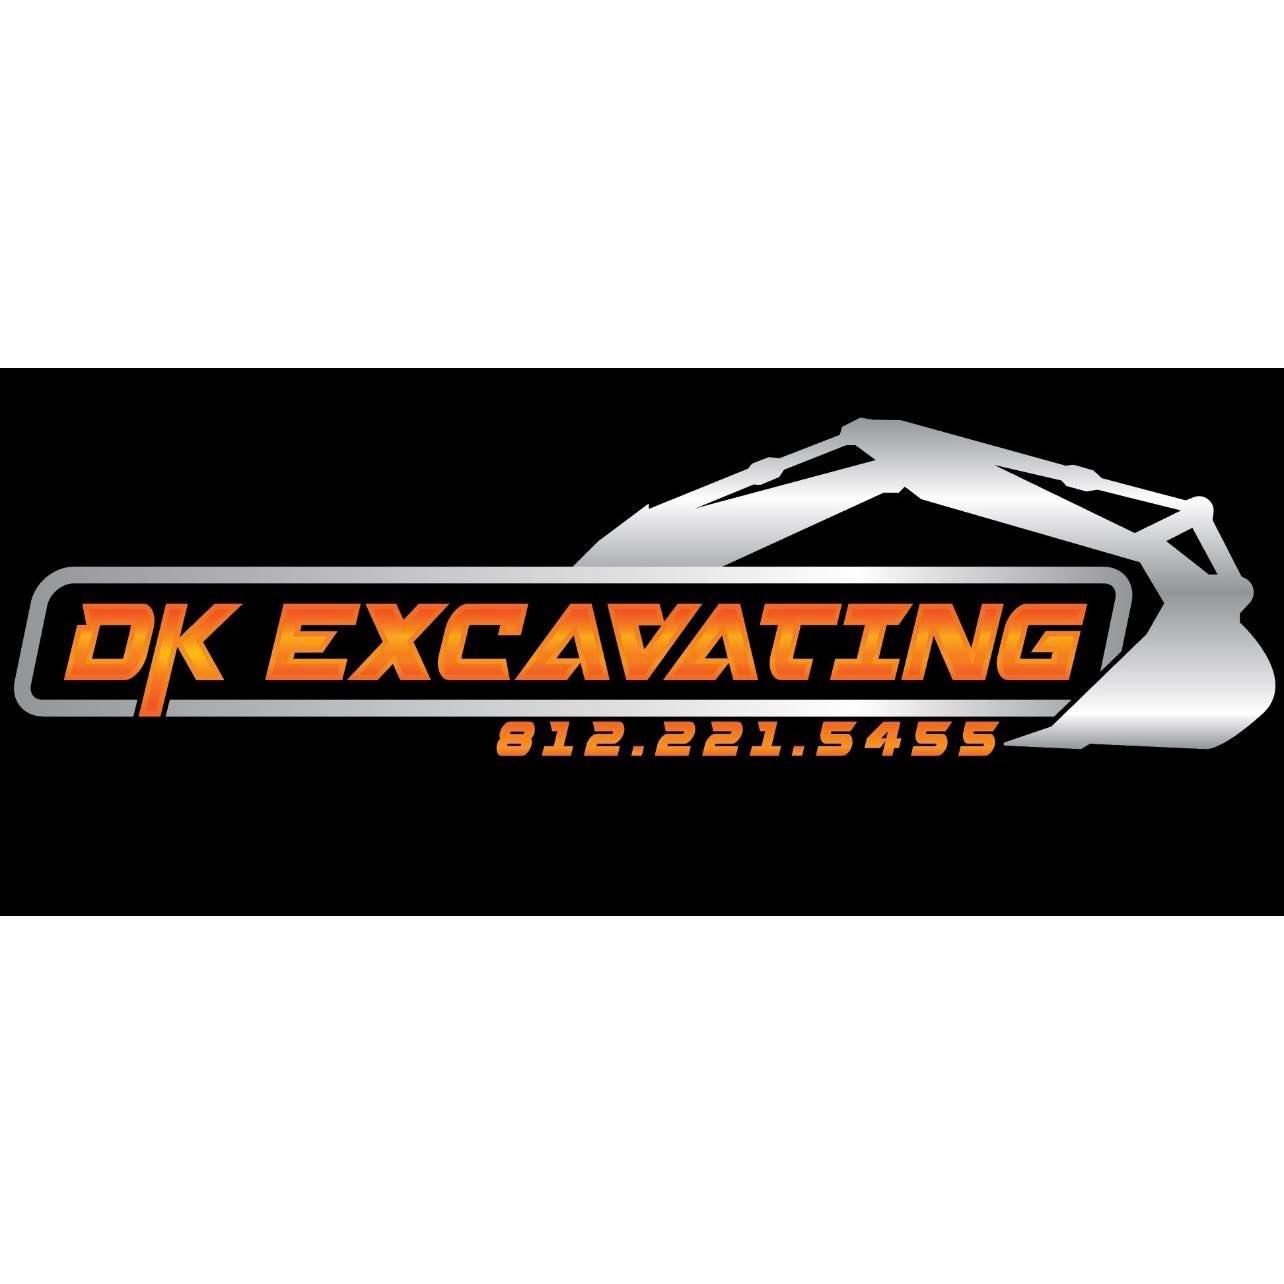 DK Excavating